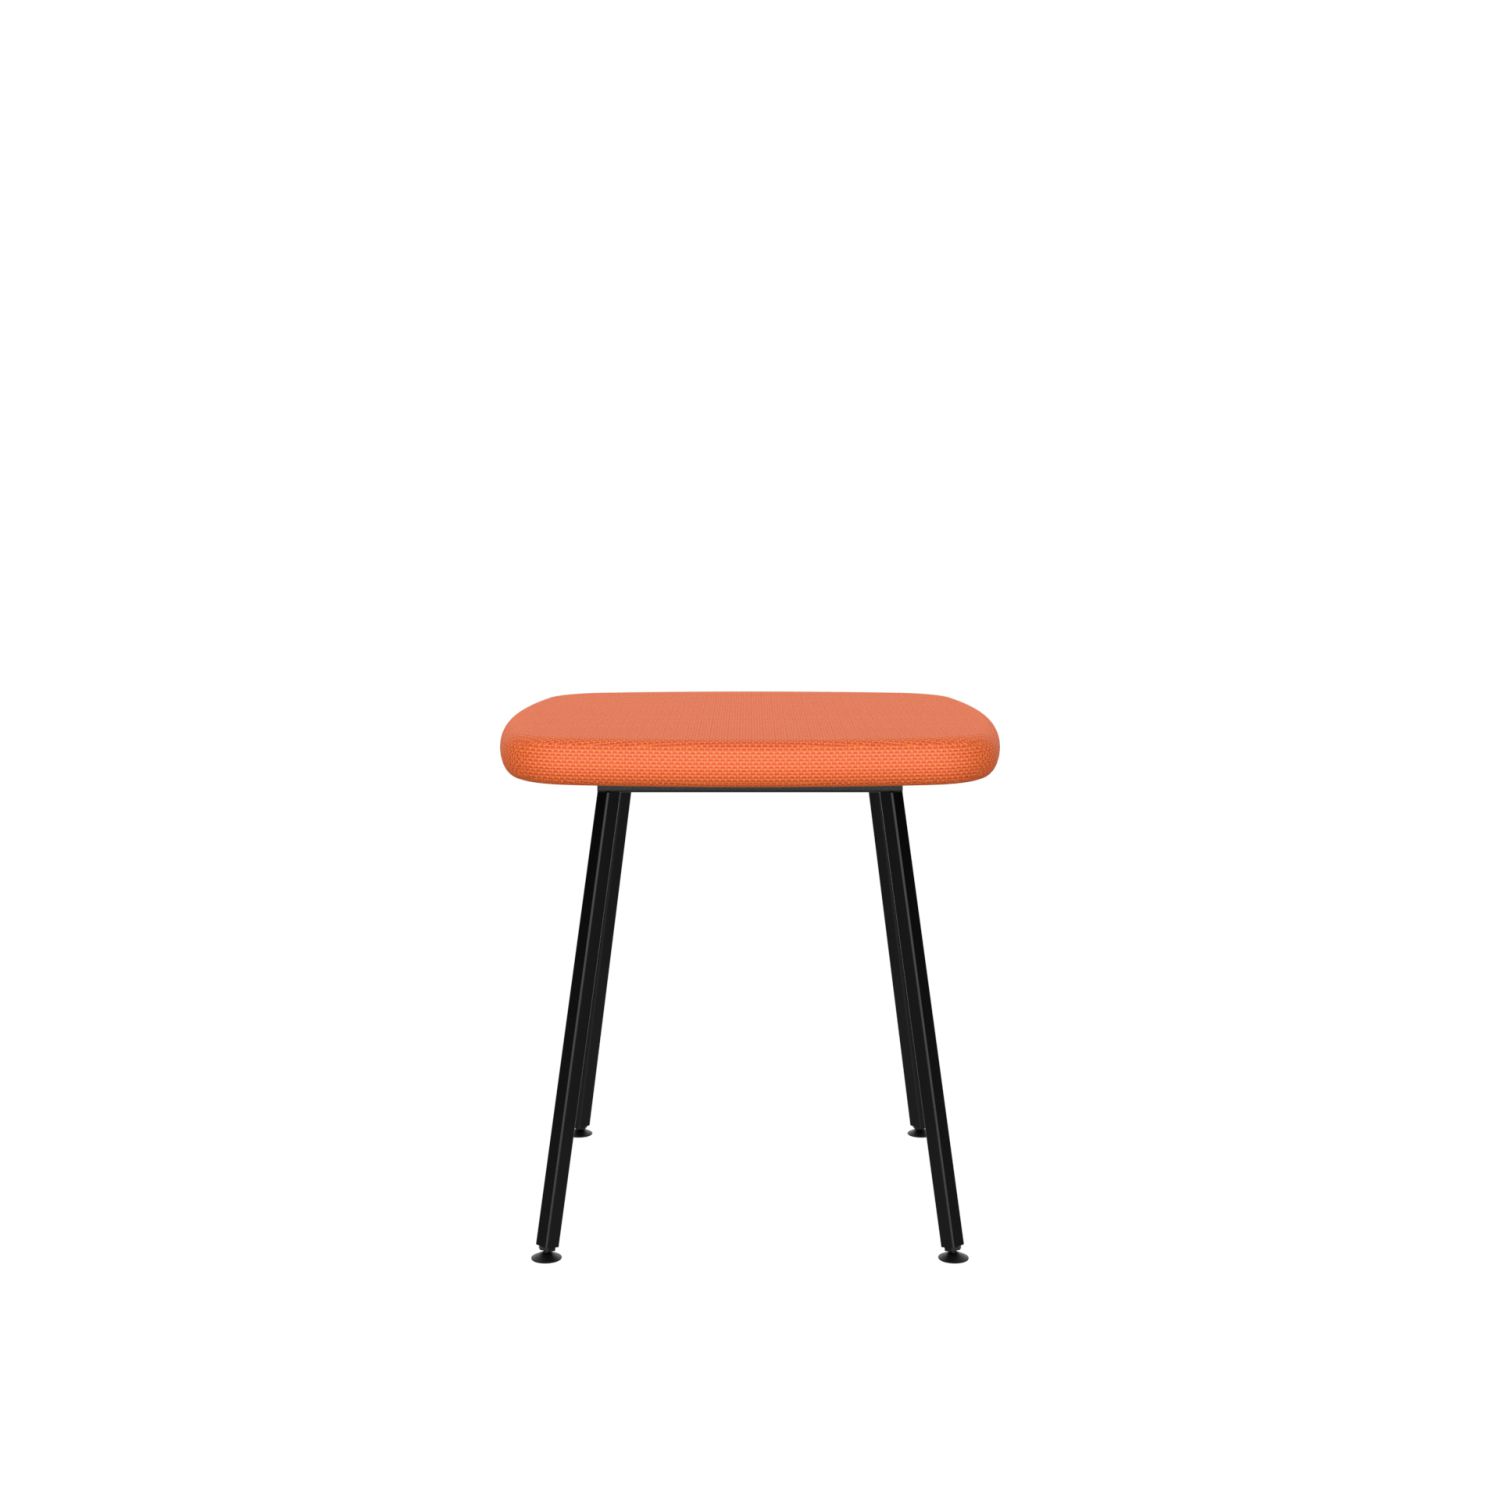 lensvelt maarten baas stool not stackable without armrests burn orange 102 hard leg ends